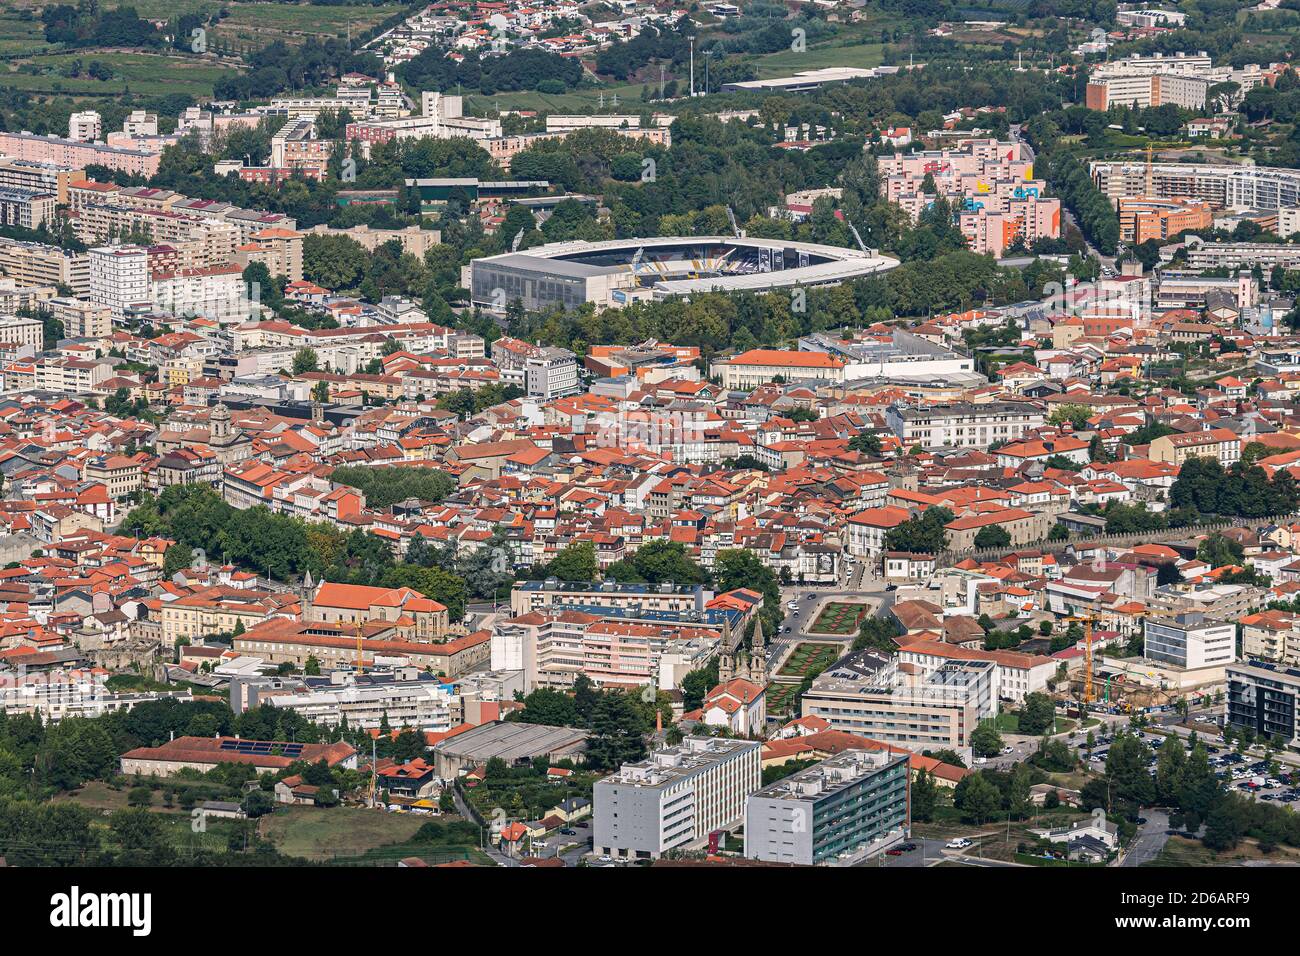 Vue aérienne de Guimarães, lieu de naissance du Portugal Banque D'Images